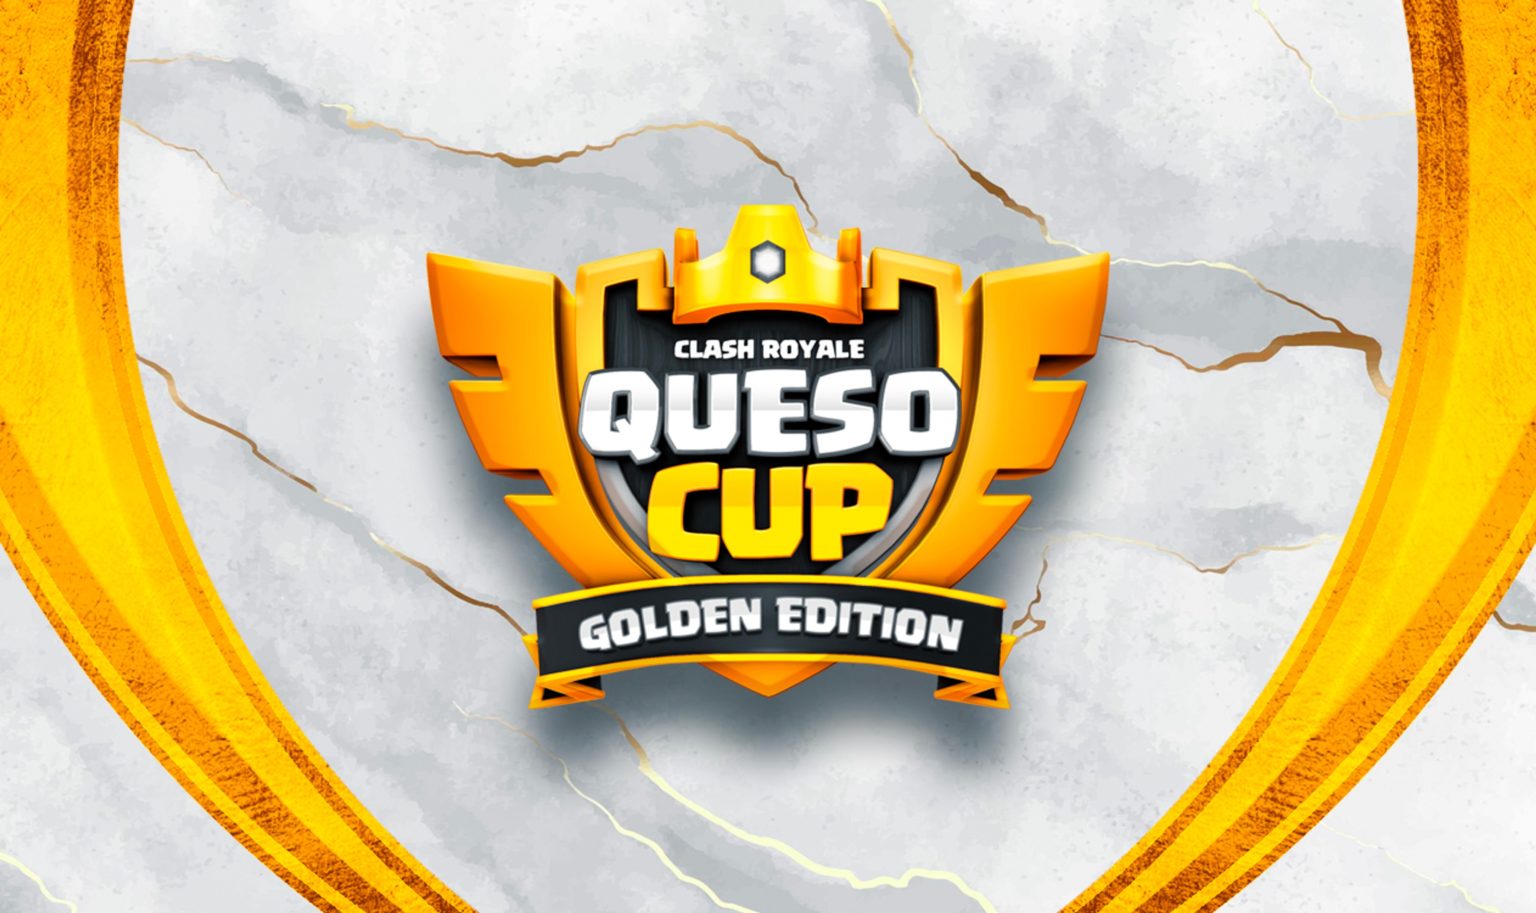 турнір clash royale queso cup golden edition дає золотий квиток на світовий фінал crl 2022